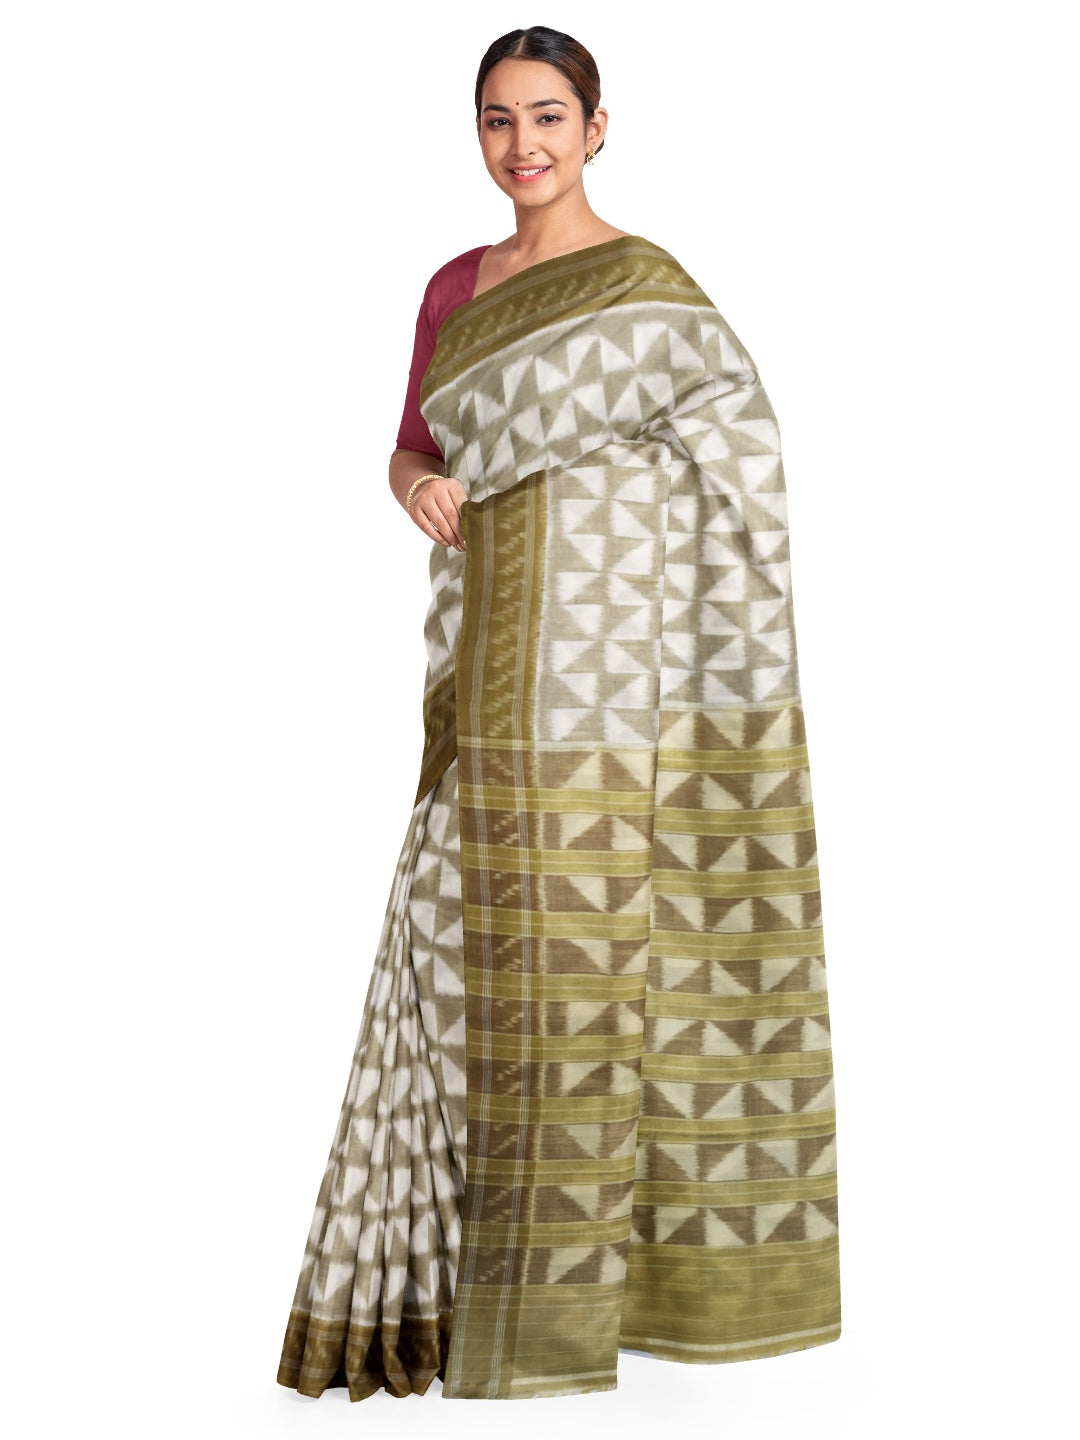 Off-white and GreenYellow Odisha ikat saree with geometric pattern woven motifs